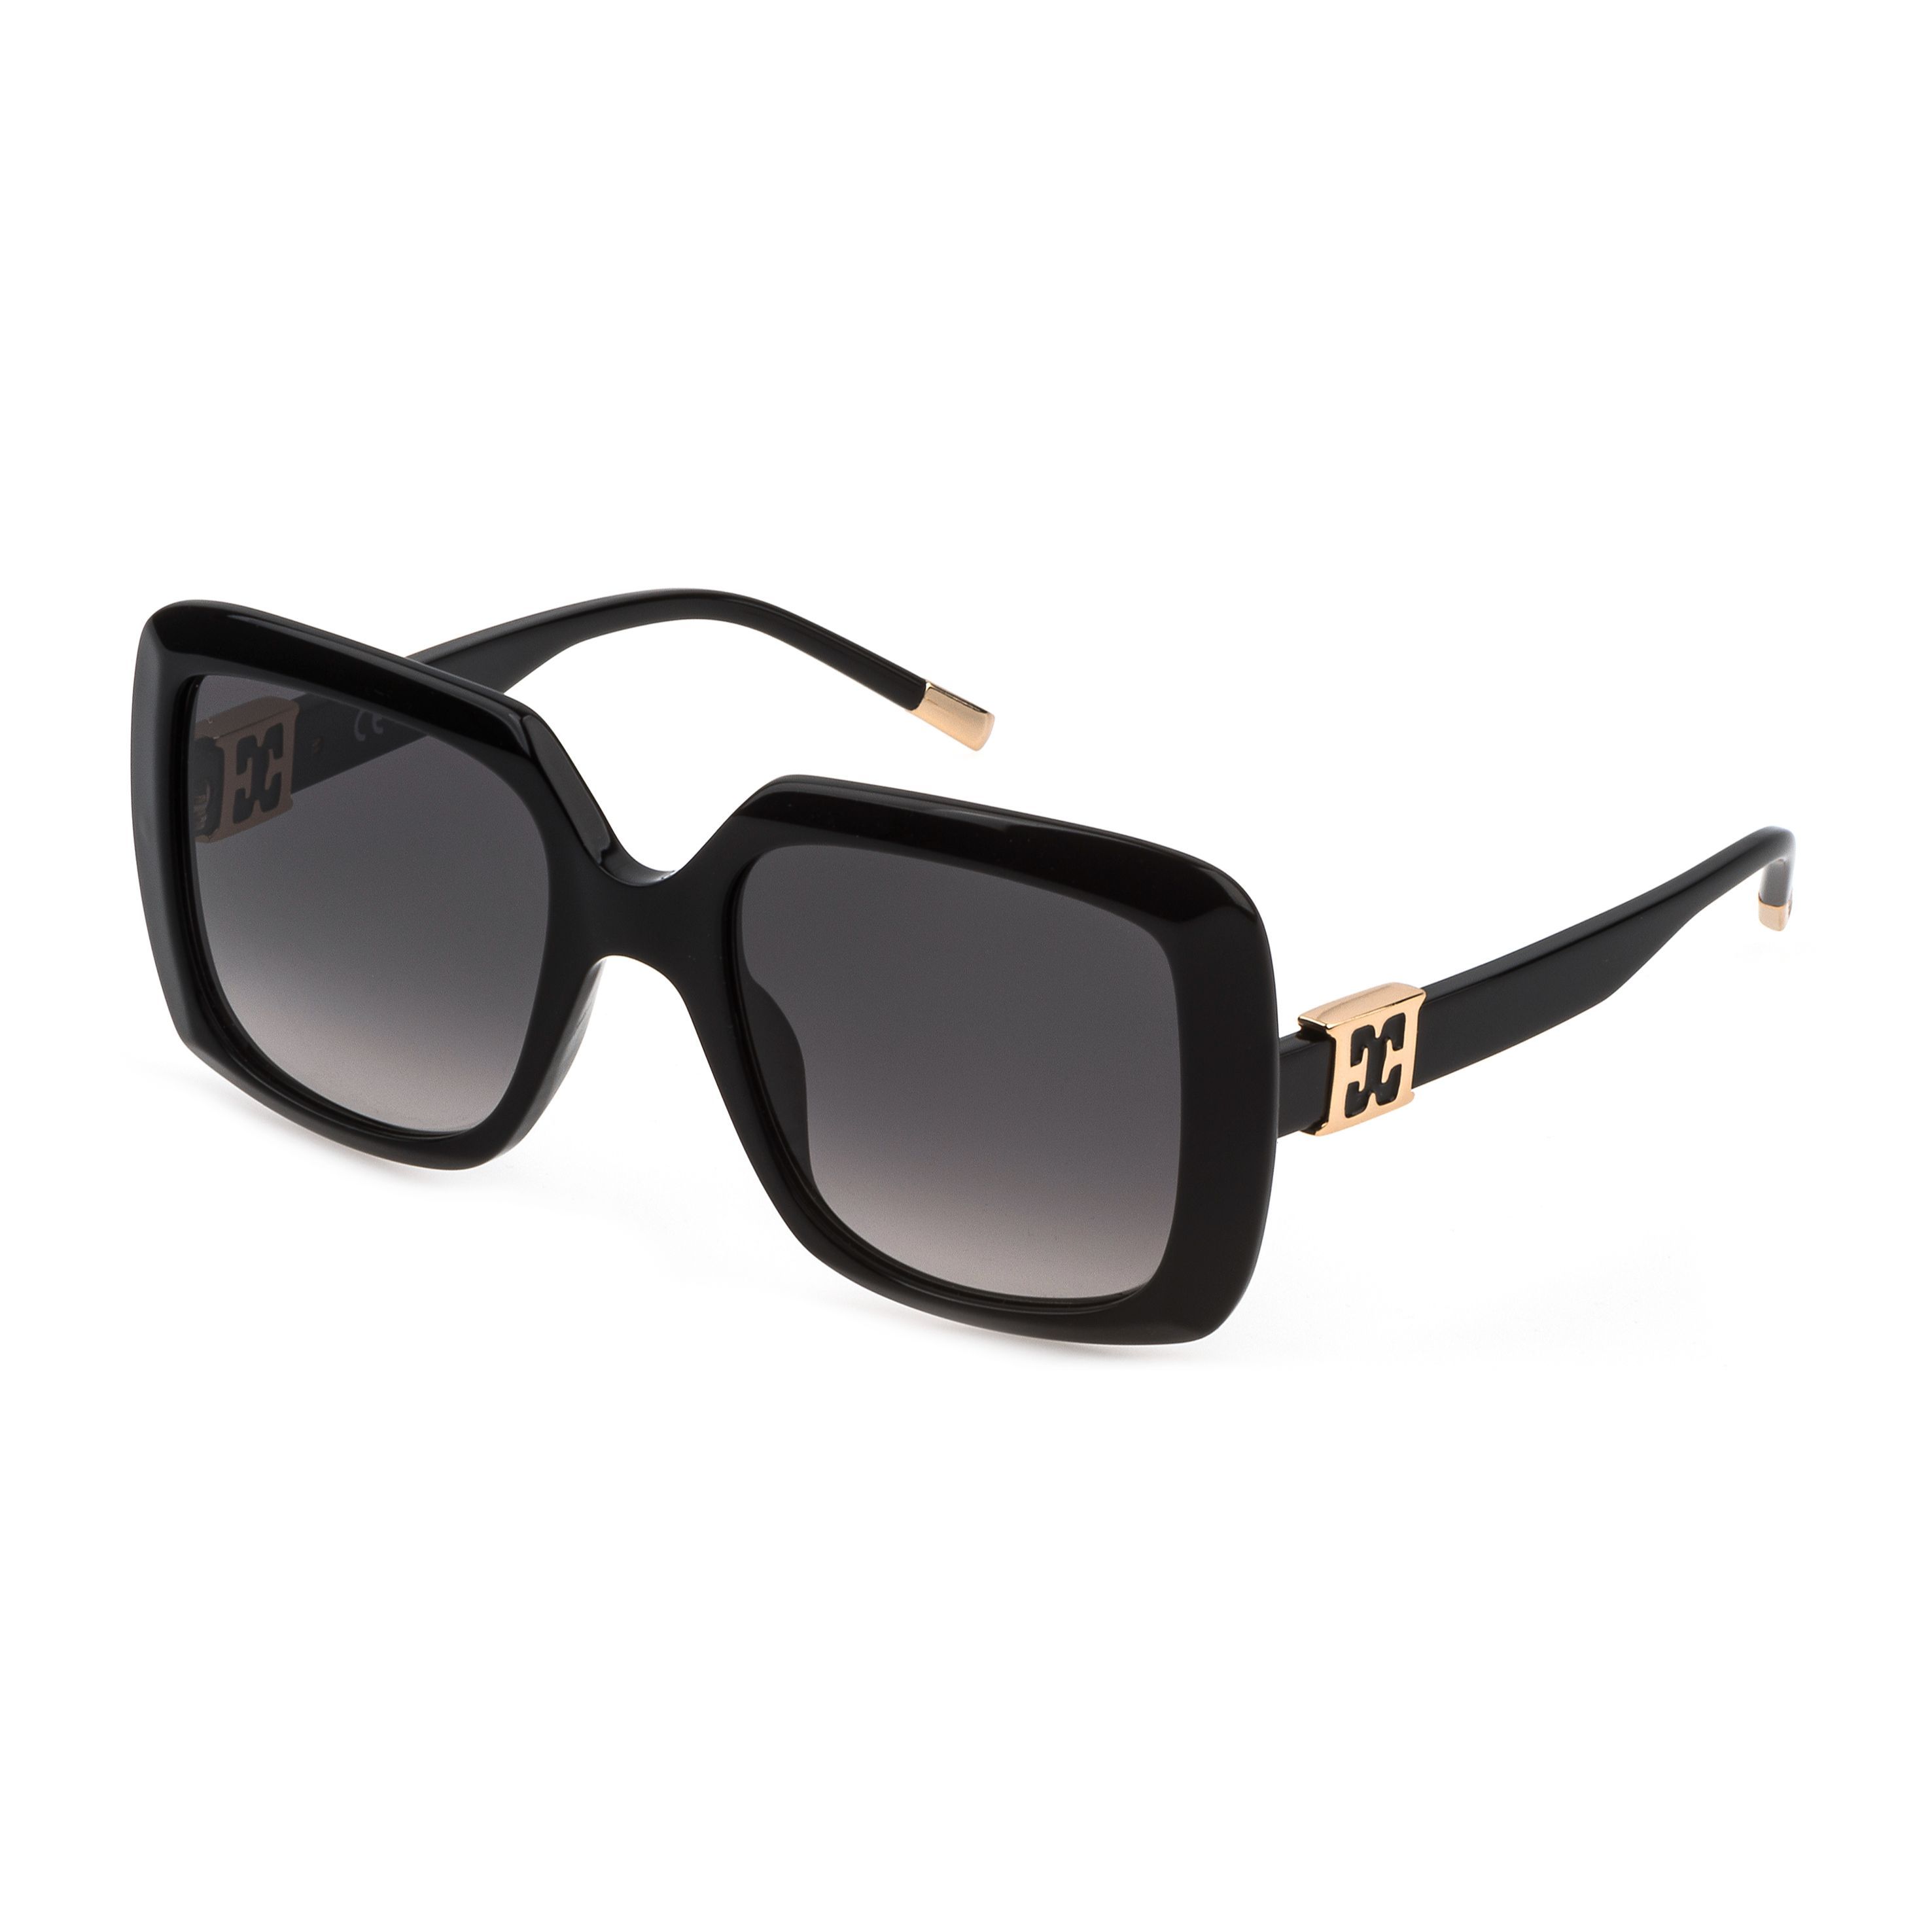 SESC22 Square Sunglasses 700 - size 54